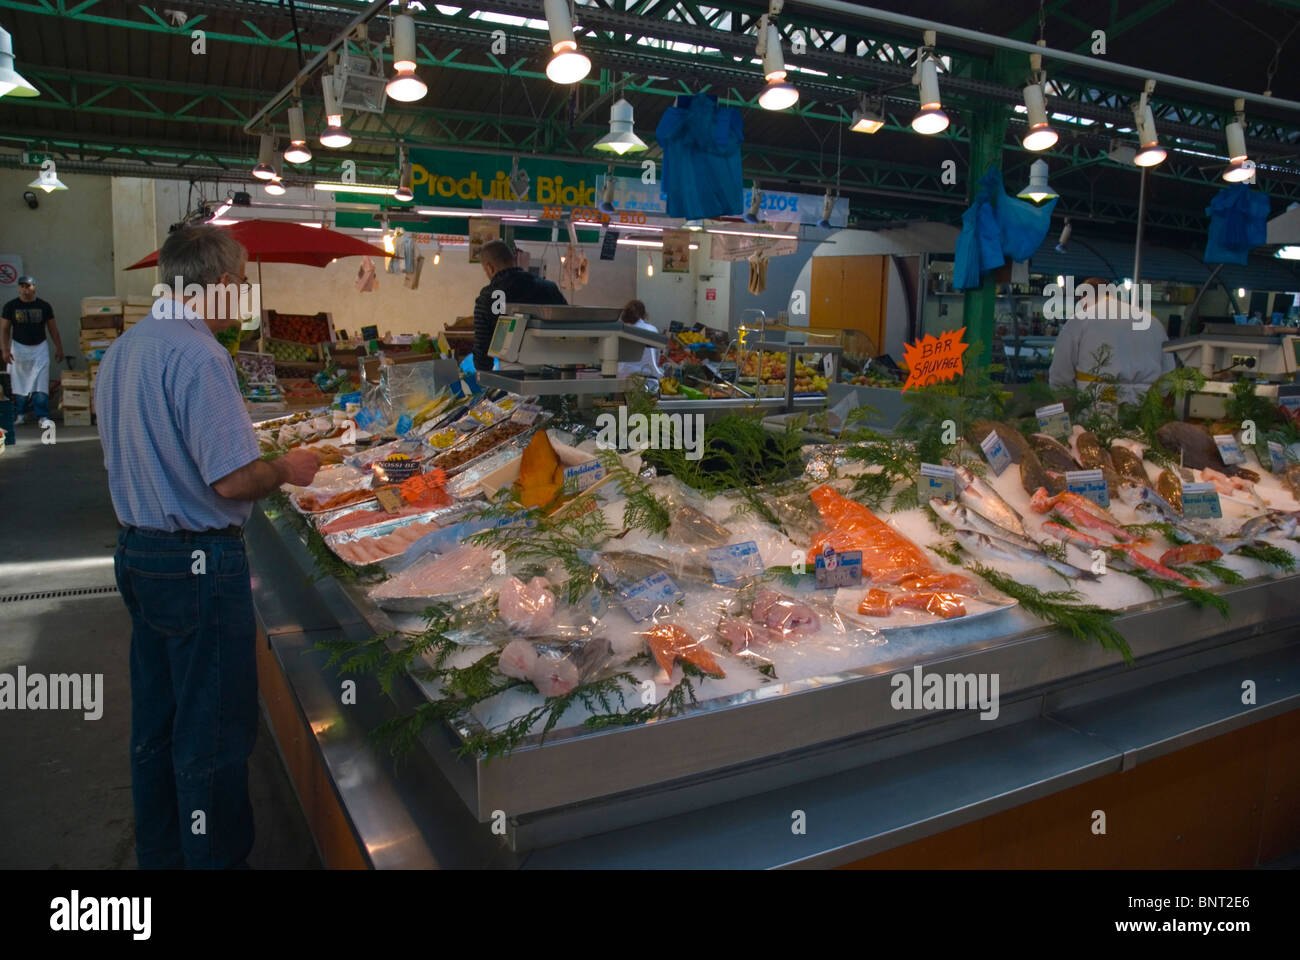 Seafood stall at Marche des Enfants Rouges market Le Marais district Paris France Europe Stock Photo